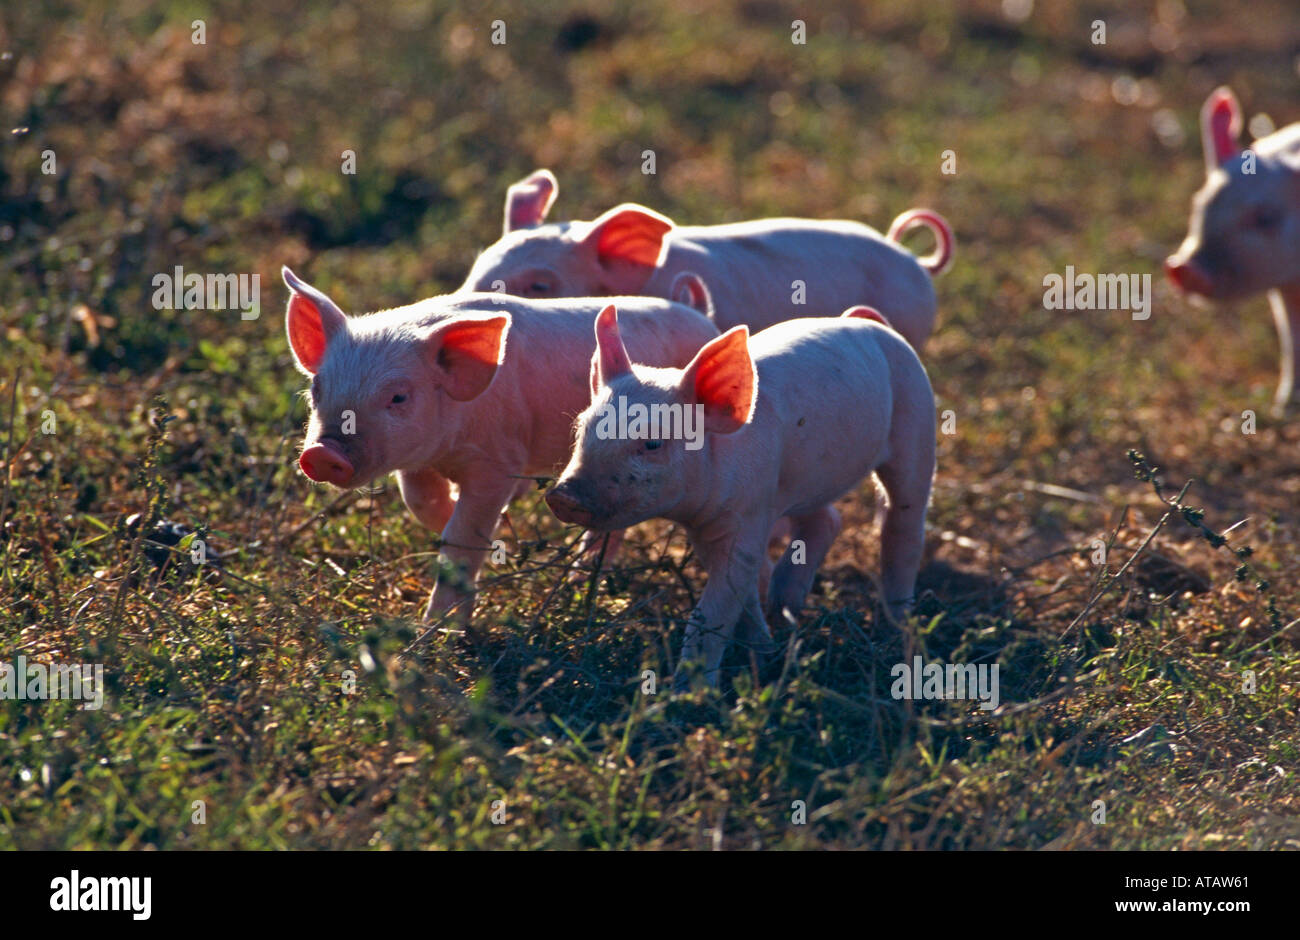 Hausschwein porcelet porc cochon Ferkel Banque D'Images